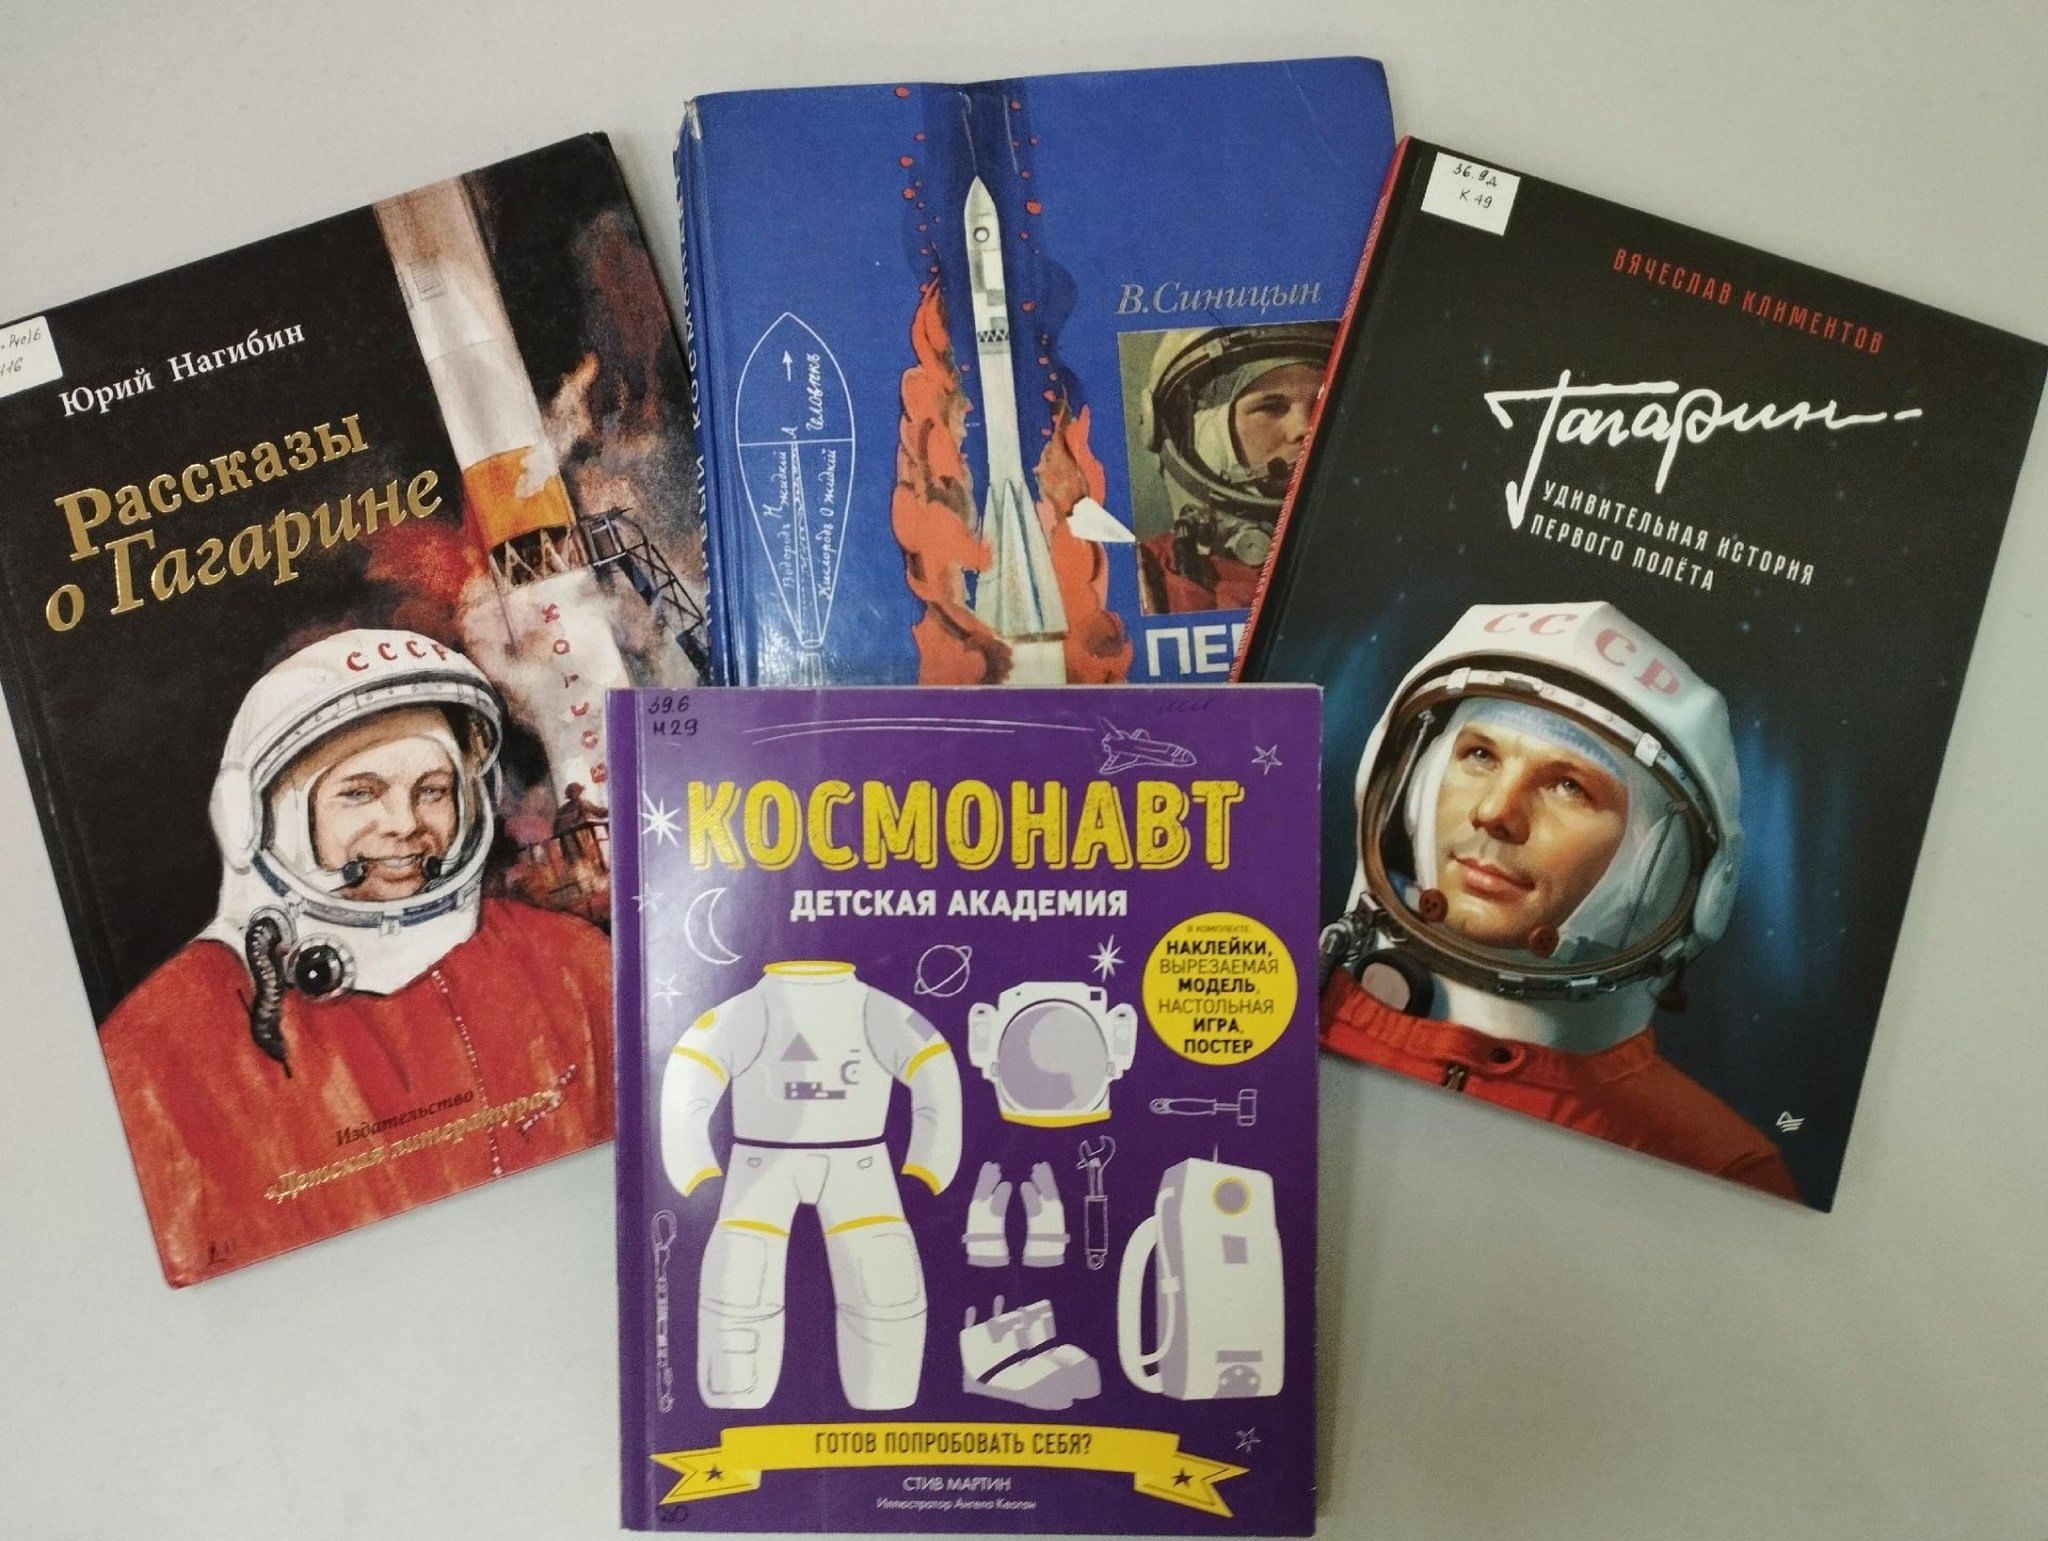 Гимн космонавтов. Космонавтика 12 апреля. Как вы стали космонавтом. Как вы стали космонавтом куда то. Как стать космонавтом.